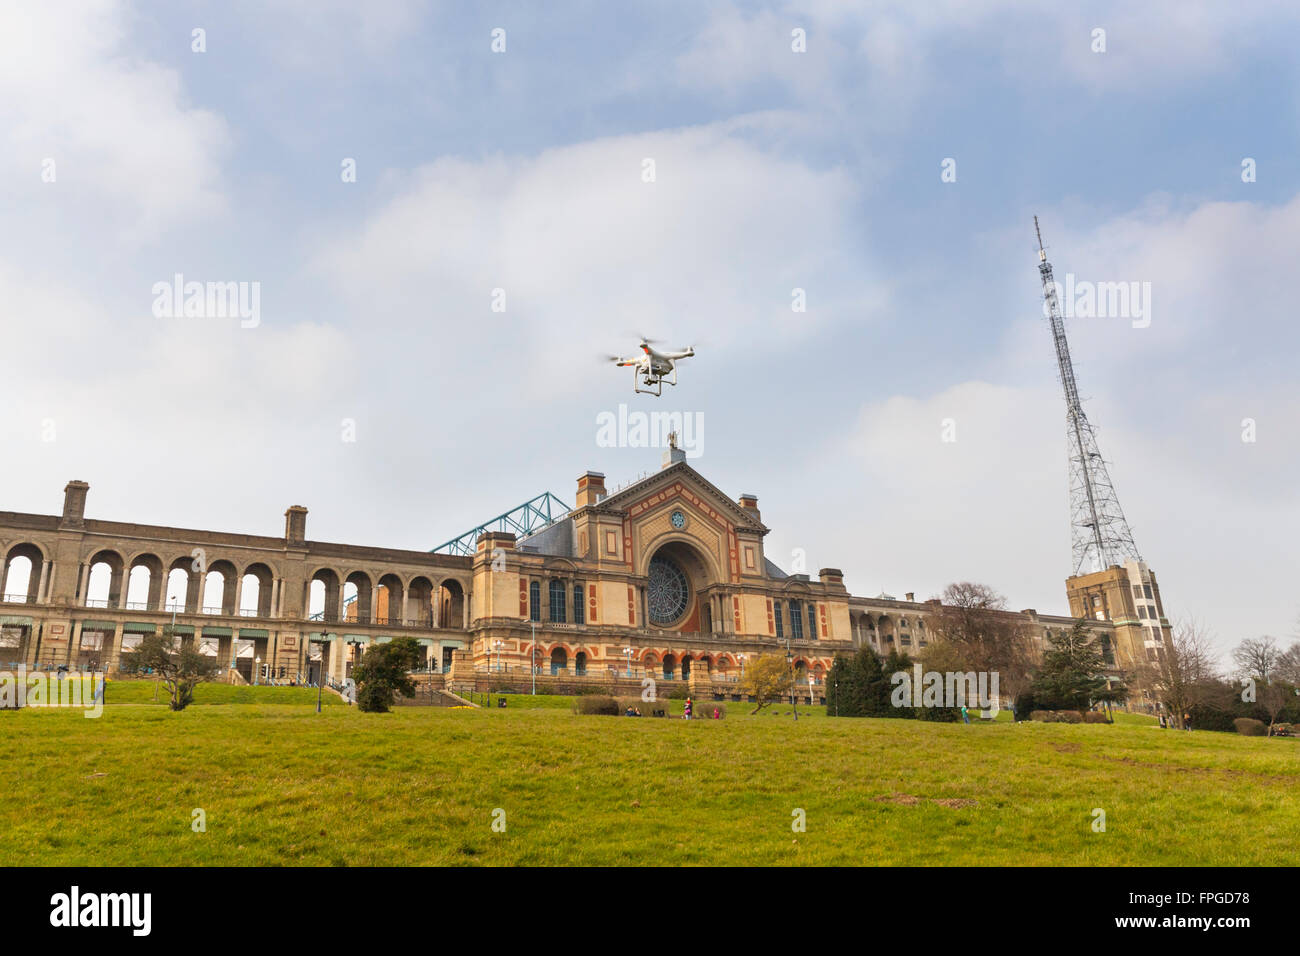 Drone Quadcopter dans le ciel avec Alexandra Palace et le mât de transmission BBL en arrière-plan. Londres, Angleterre Banque D'Images